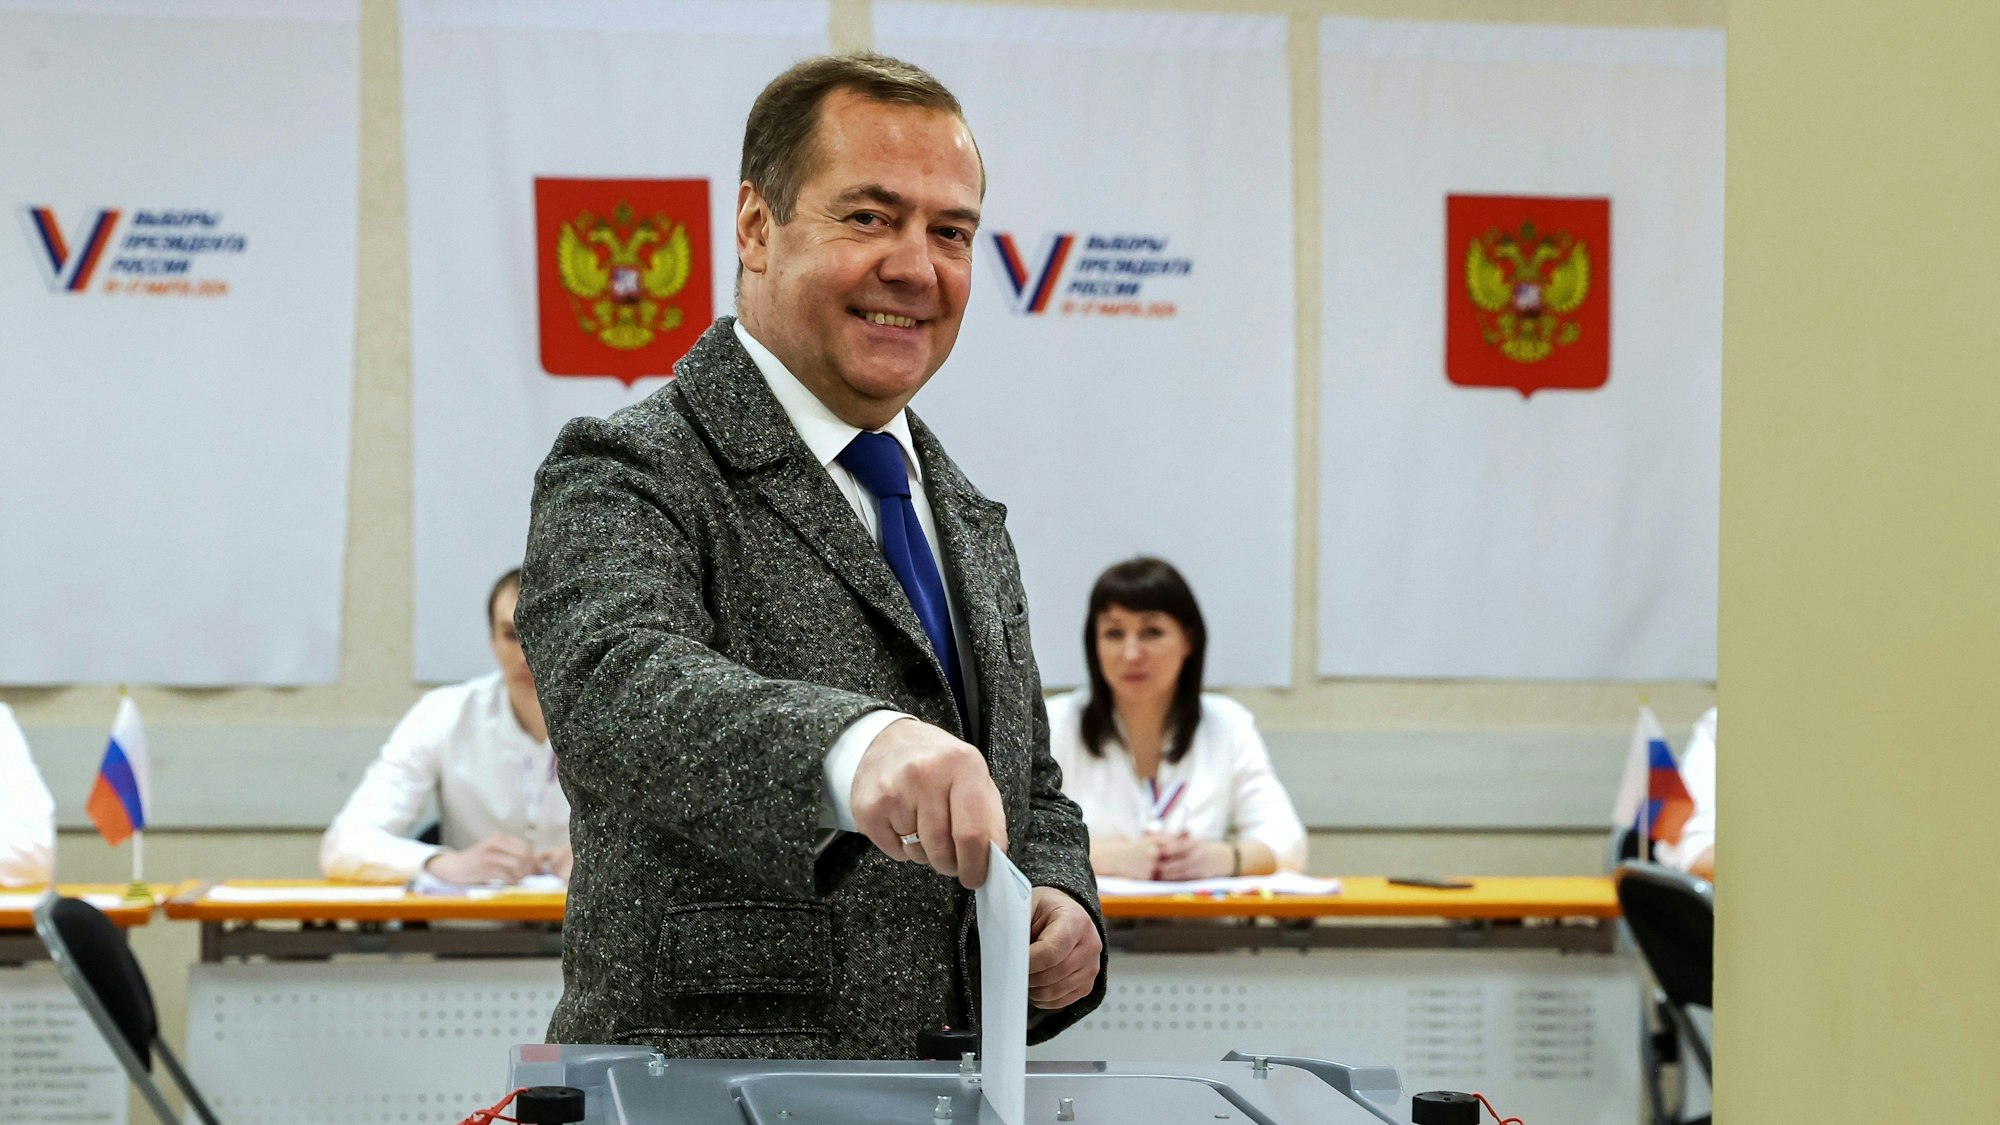 Dmitri Medwedew, stellvertretender Vorsitzender des russischen Sicherheitsrates und Chef der Partei ‚Einiges Russland‘, bei seiner Stimmzettelabgabe während der Präsidentschaftswahlen.